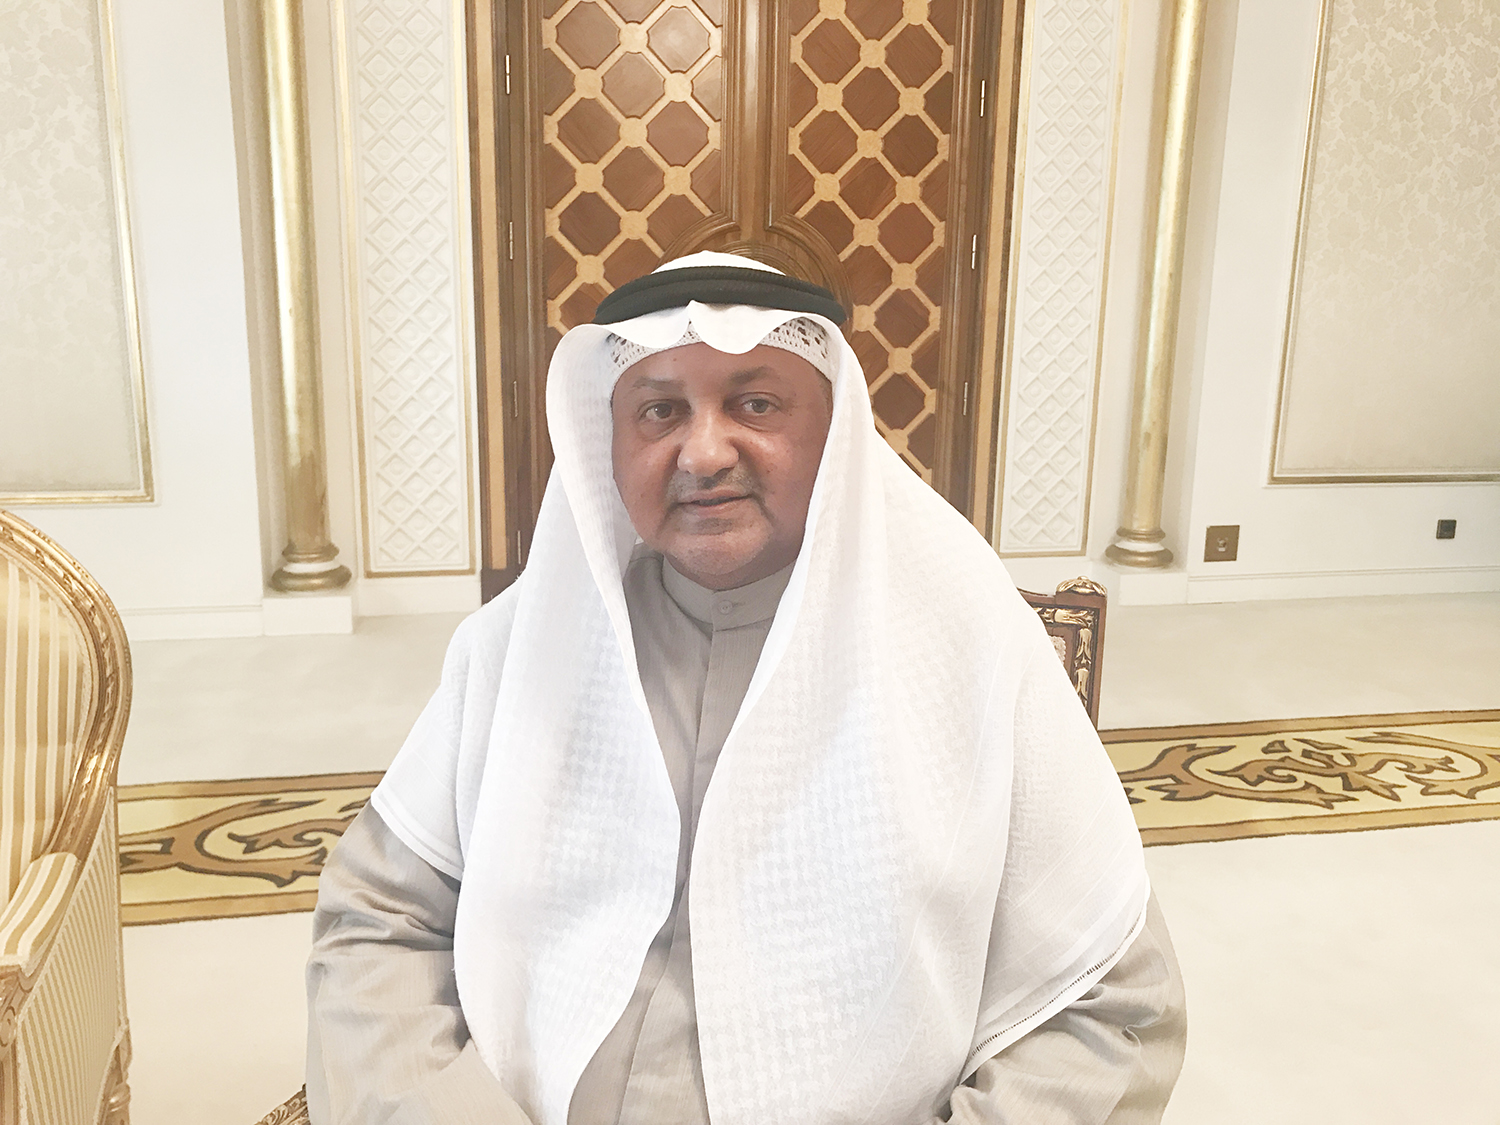 وكيل وزارة الاعلام الكويتية بالتكليف ورئيس فريق الدعم الإعلامي لخطة التنمية محمد العواش